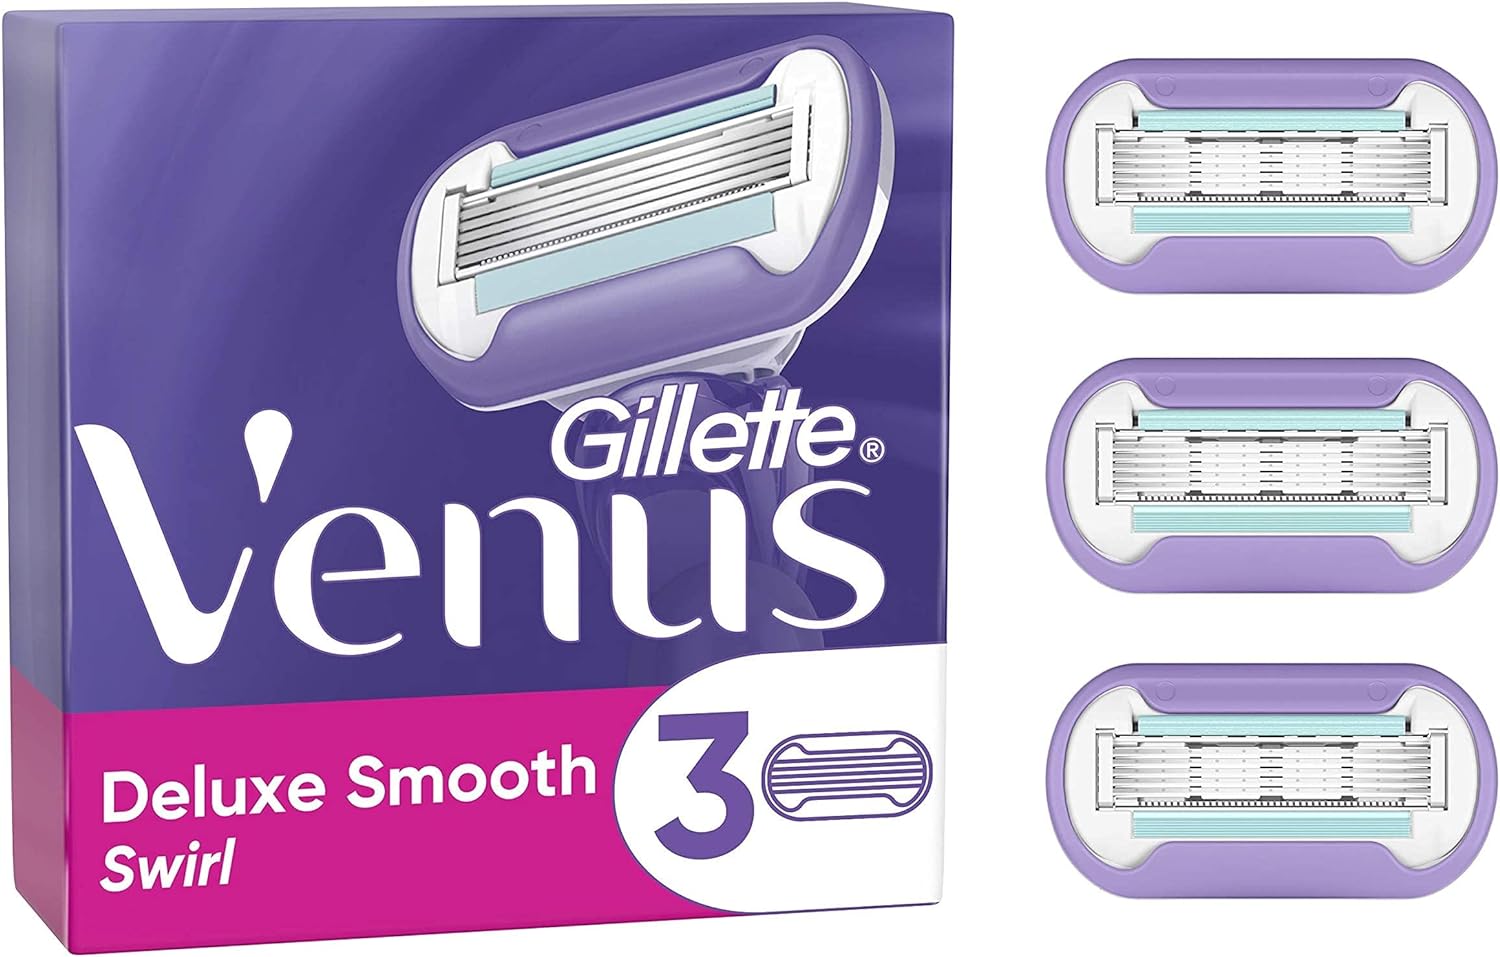 Gillette Venus Deluxe Smooth Swirl Razor Blades